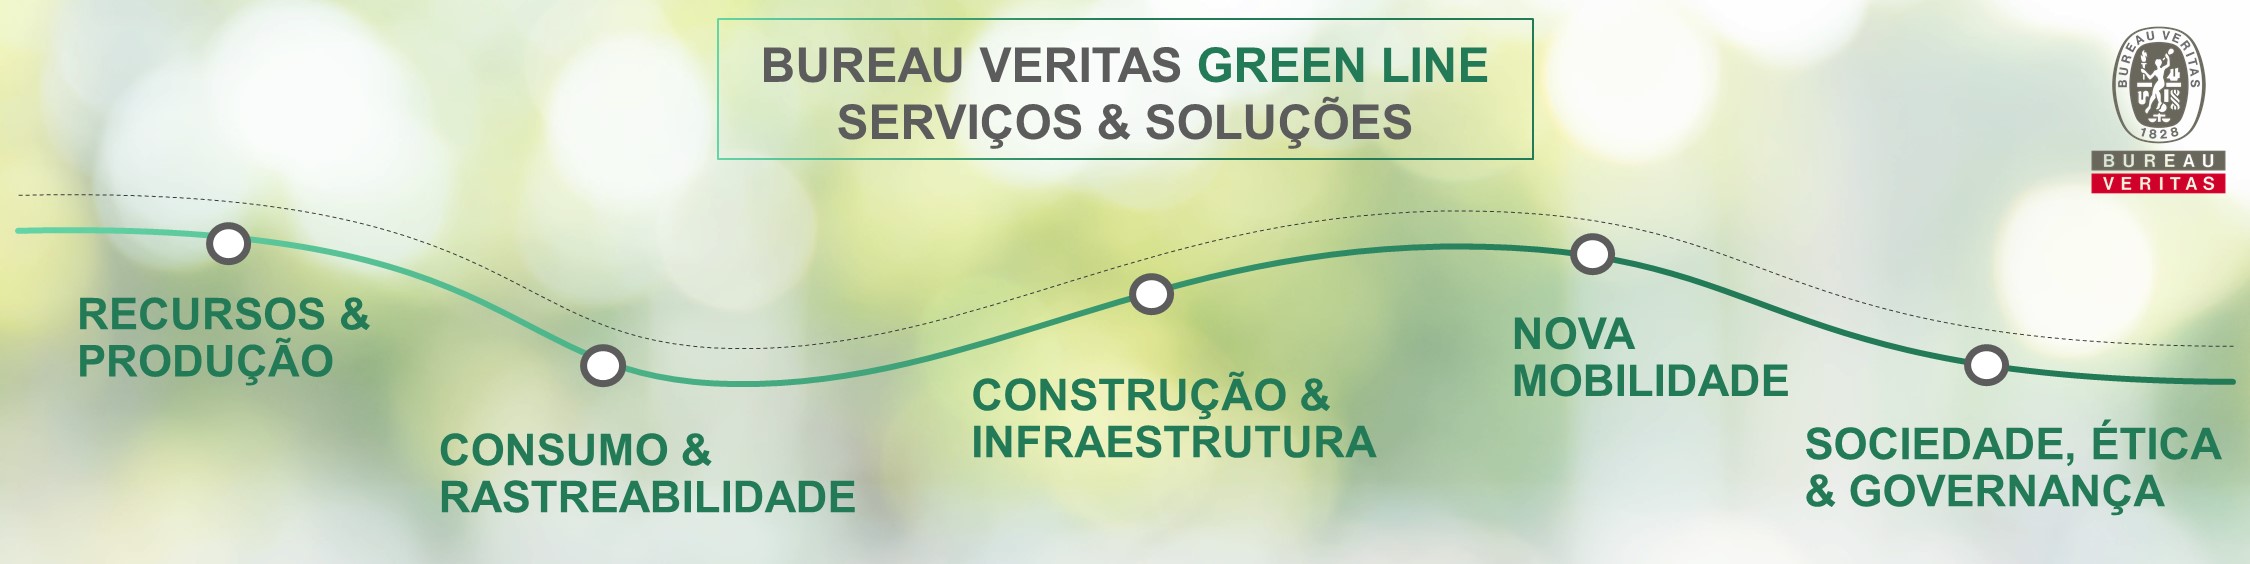 Imagem com uma ilustração listando os serviços e soluções do Green Line BV, incluindo Recursos & Produção, Consumo & Rastreabilidade, Construção & Infraestrutura, Nova Mobilidade e Sociedade, Ética & Governança